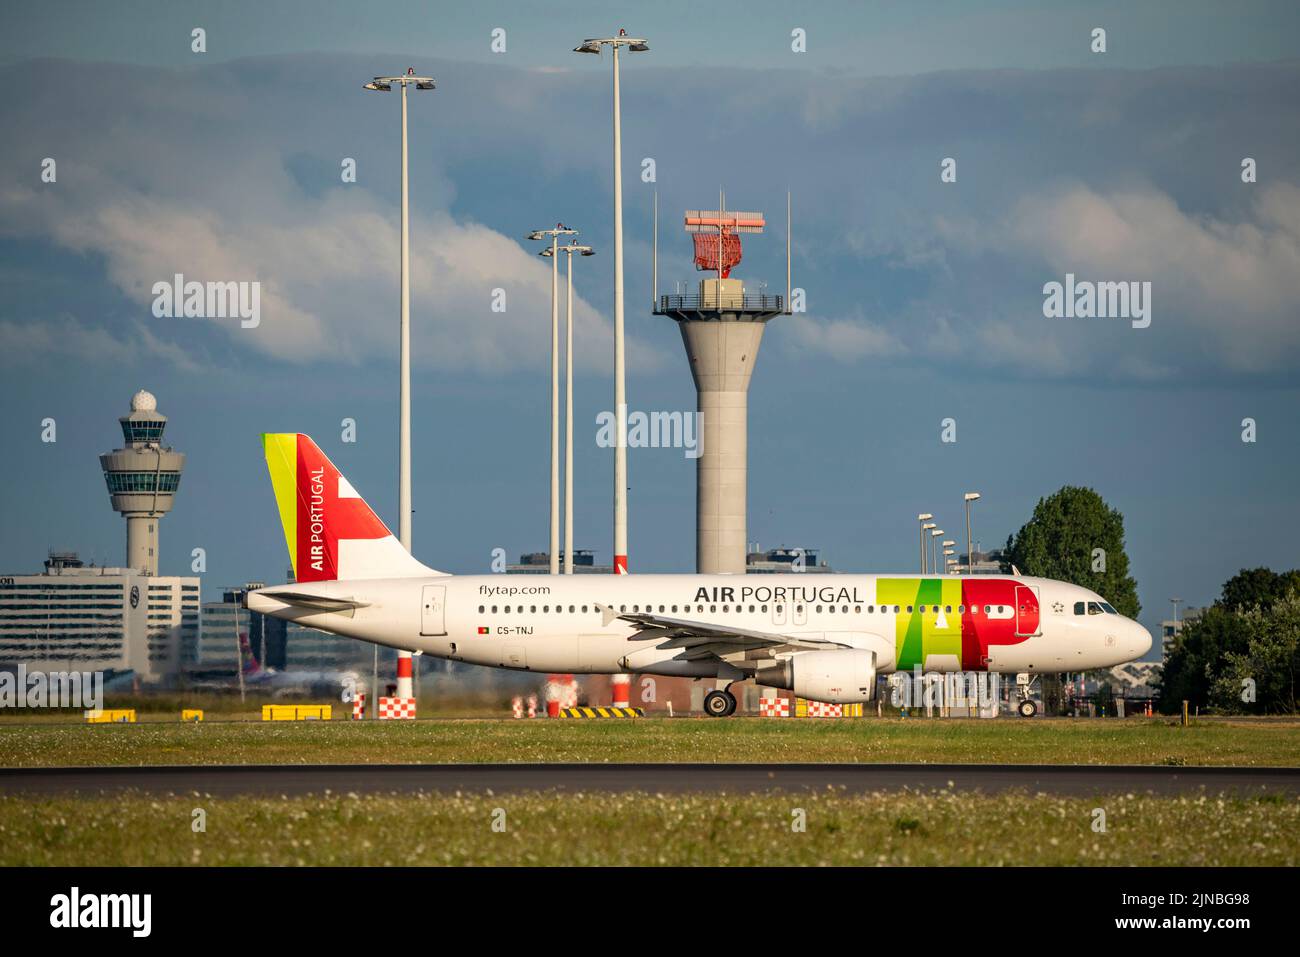 Amsterdam Shiphol Airport, Polderbaan, una de las 6 pistas de aterrizaje, torre de control de tráfico aéreo, CS-TNJ, TAP - Air Portugal Airbus A320-200, en taxi para el despegue Foto de stock